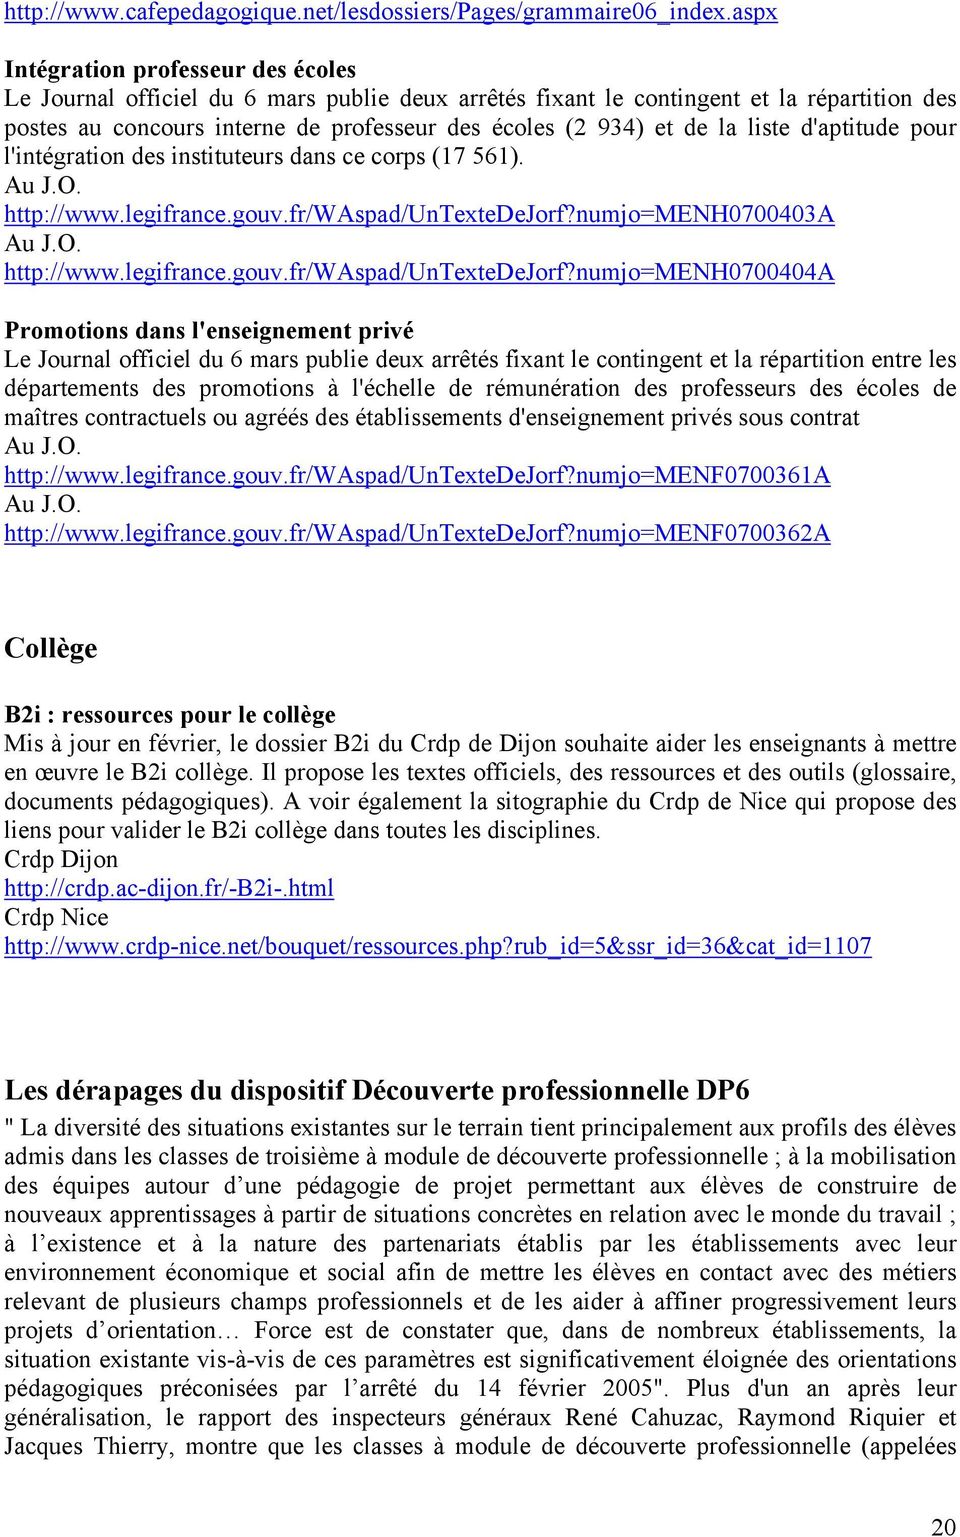 la liste d'aptitude pour l'intégration des instituteurs dans ce corps (17 561). Au J.O. http://www.legifrance.gouv.fr/waspad/untextedejorf?